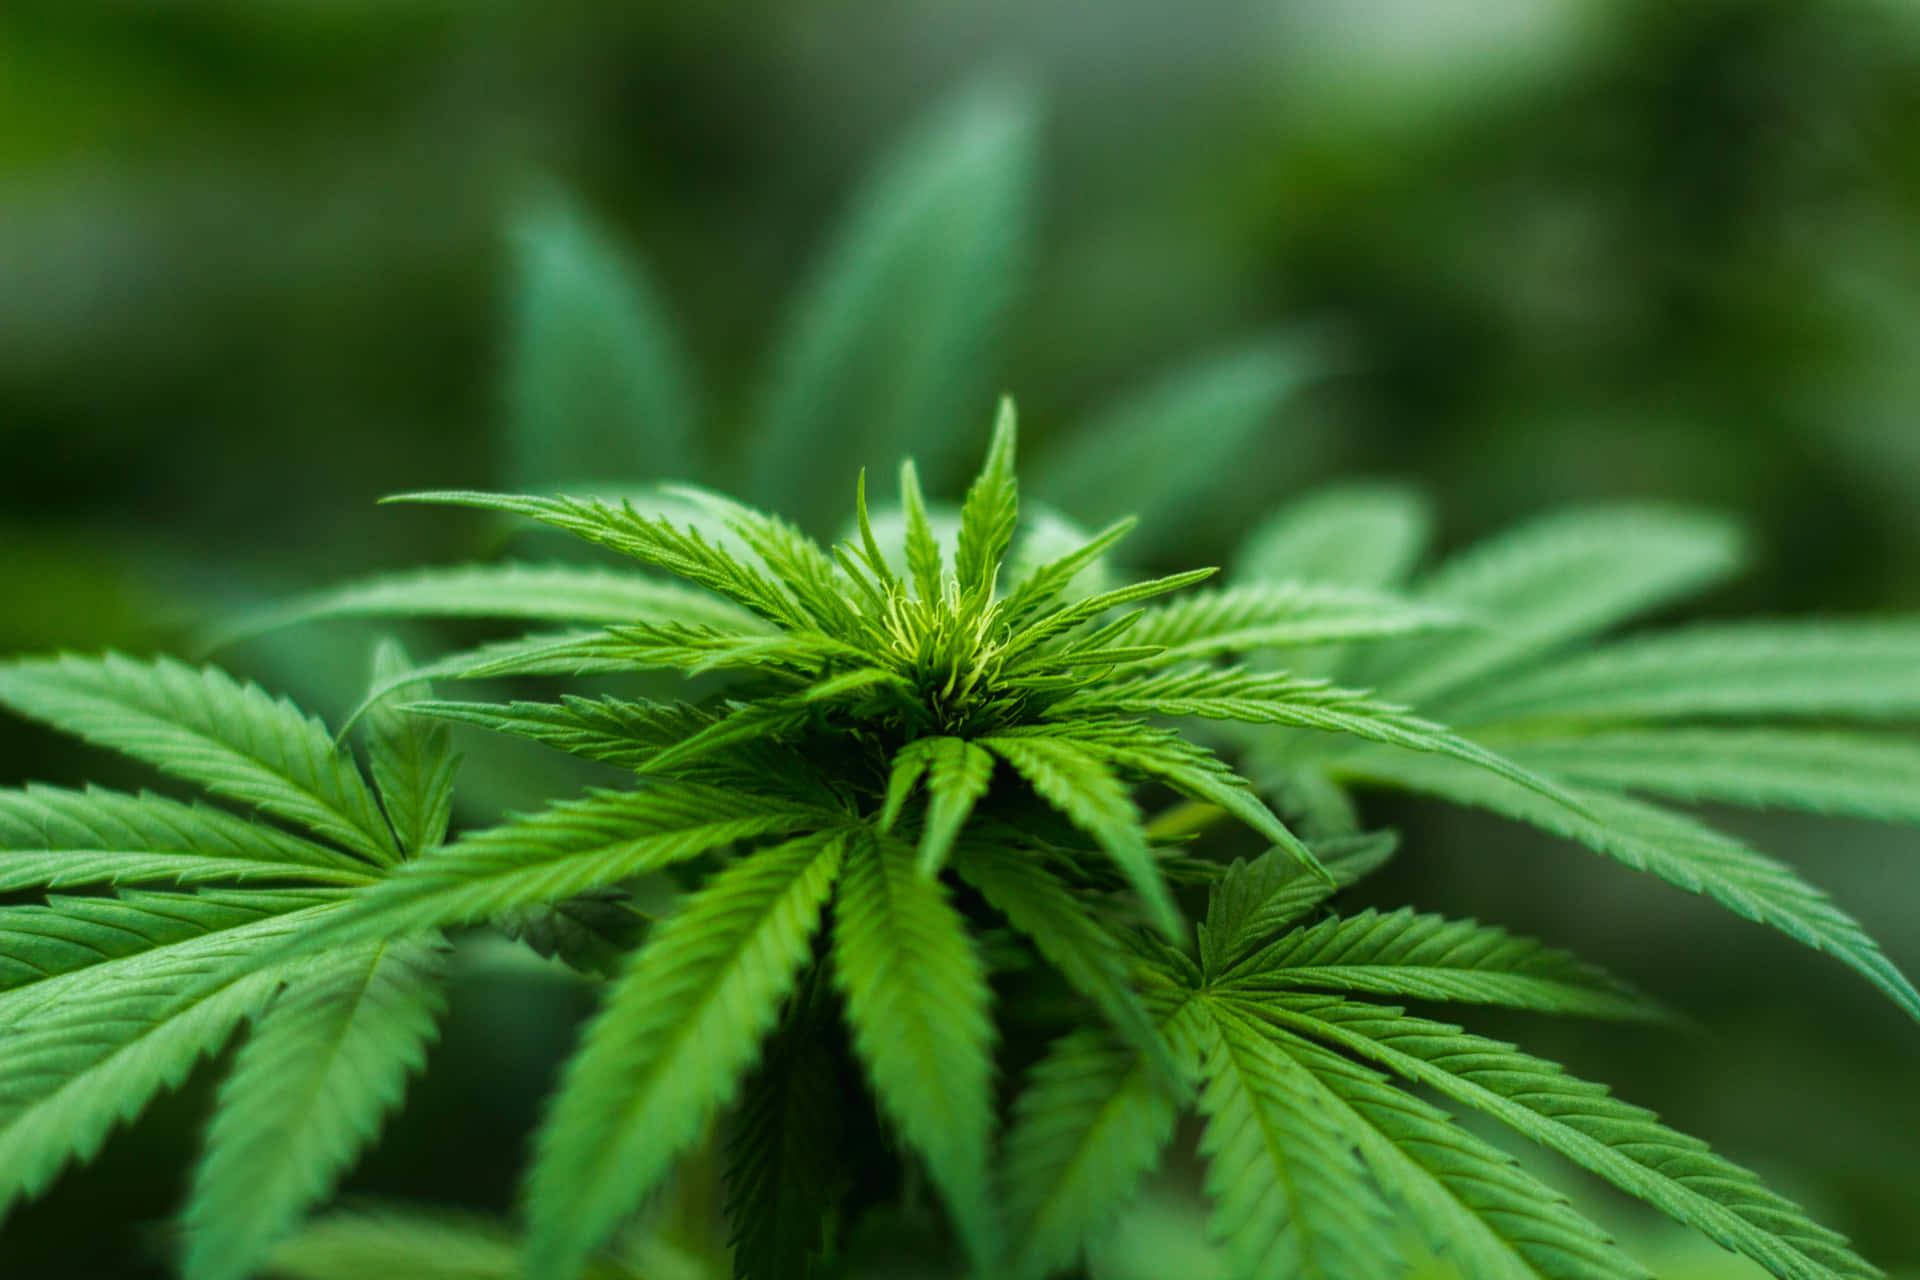 Aesthetic Macro Shot of Marijuana Buds